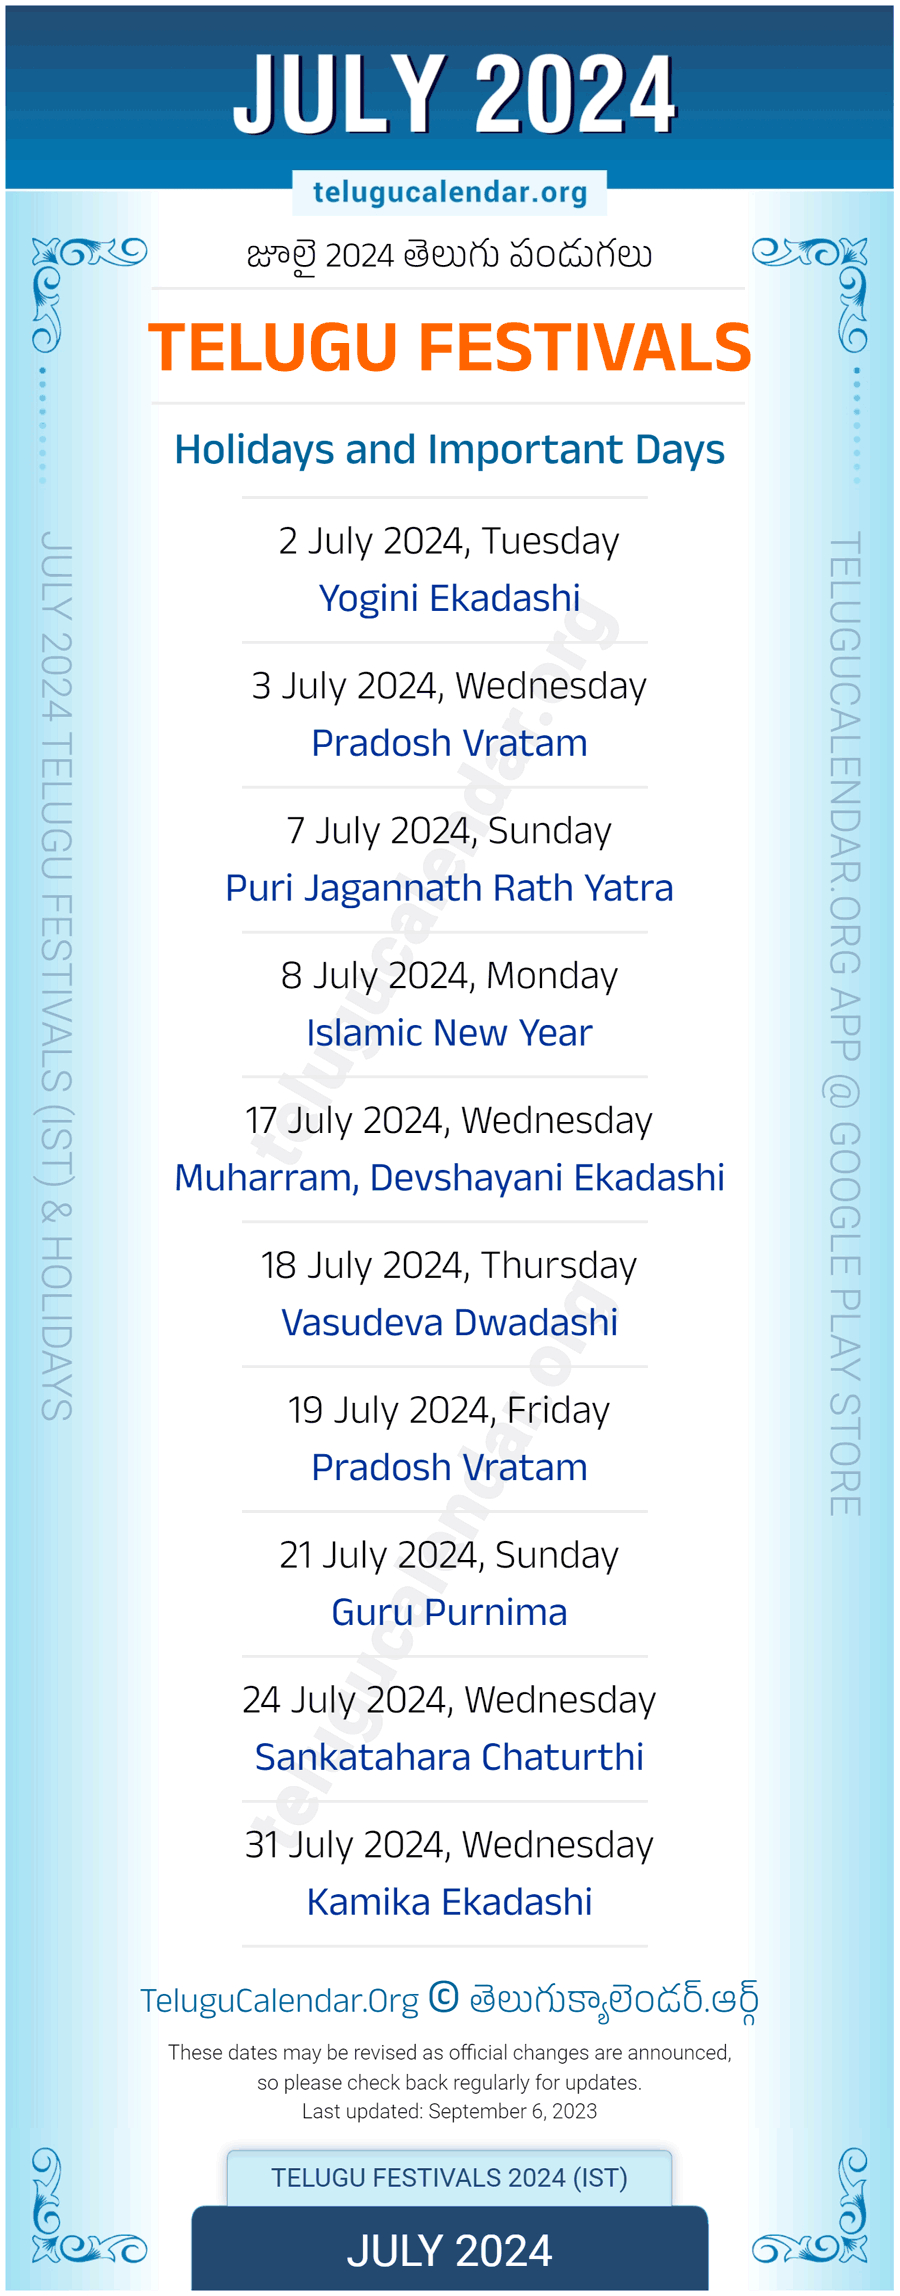 Telugu Festivals 2024 July Pdf Download for July 2024 Festival Calendar